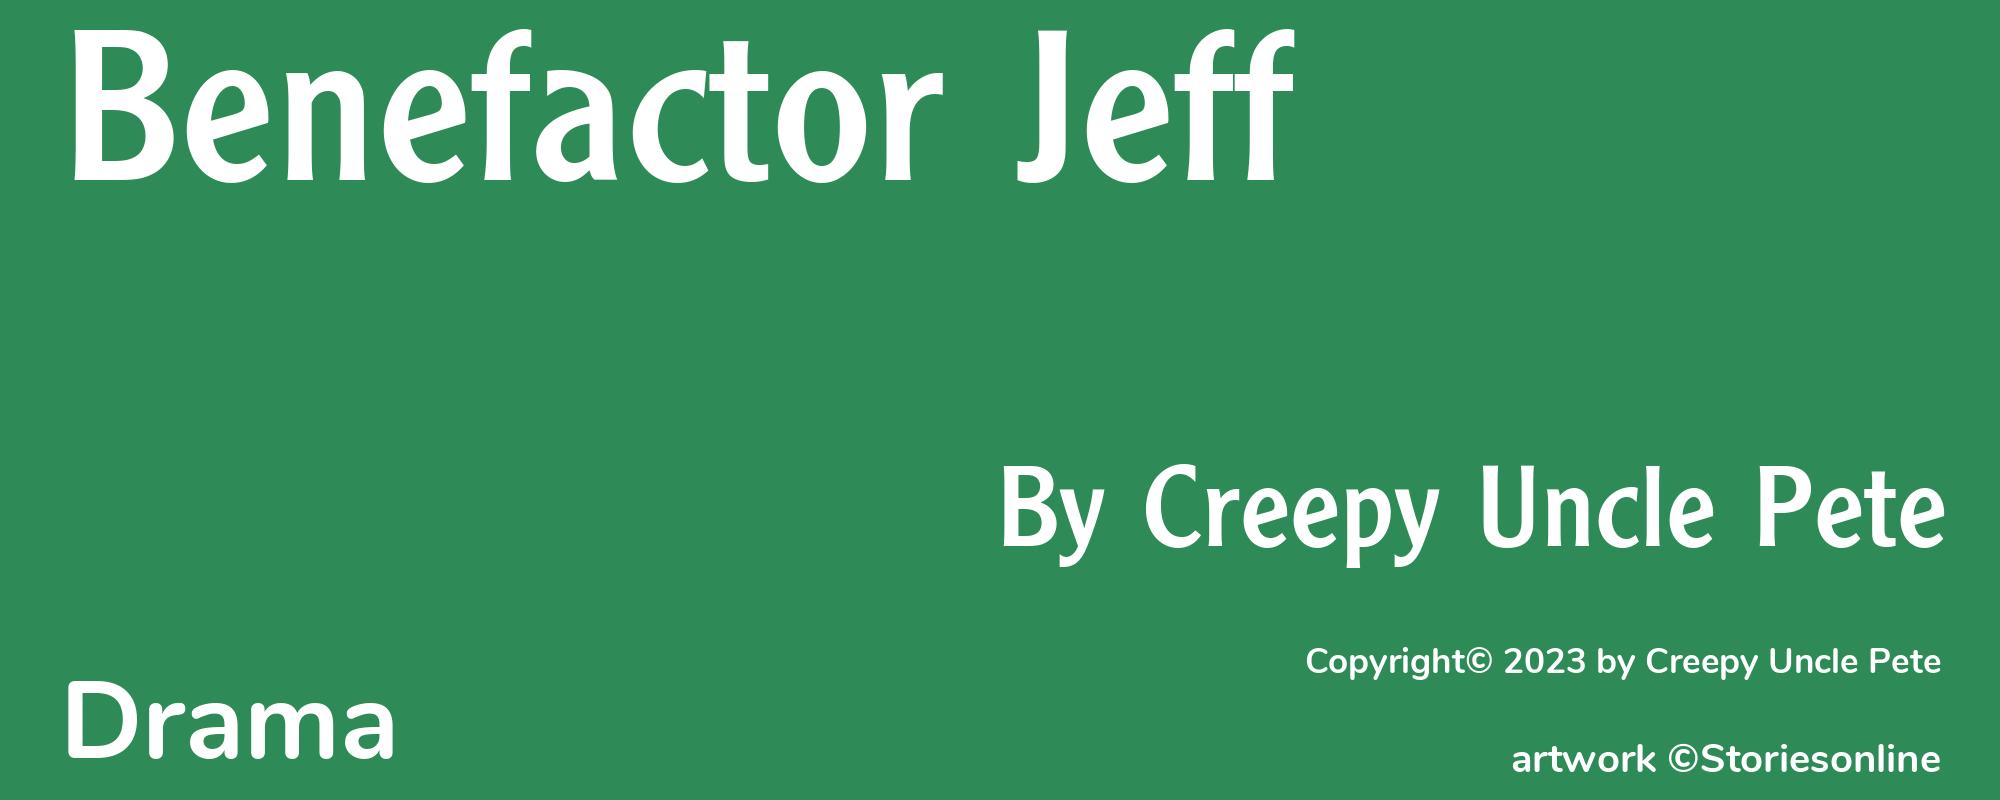 Benefactor Jeff - Cover